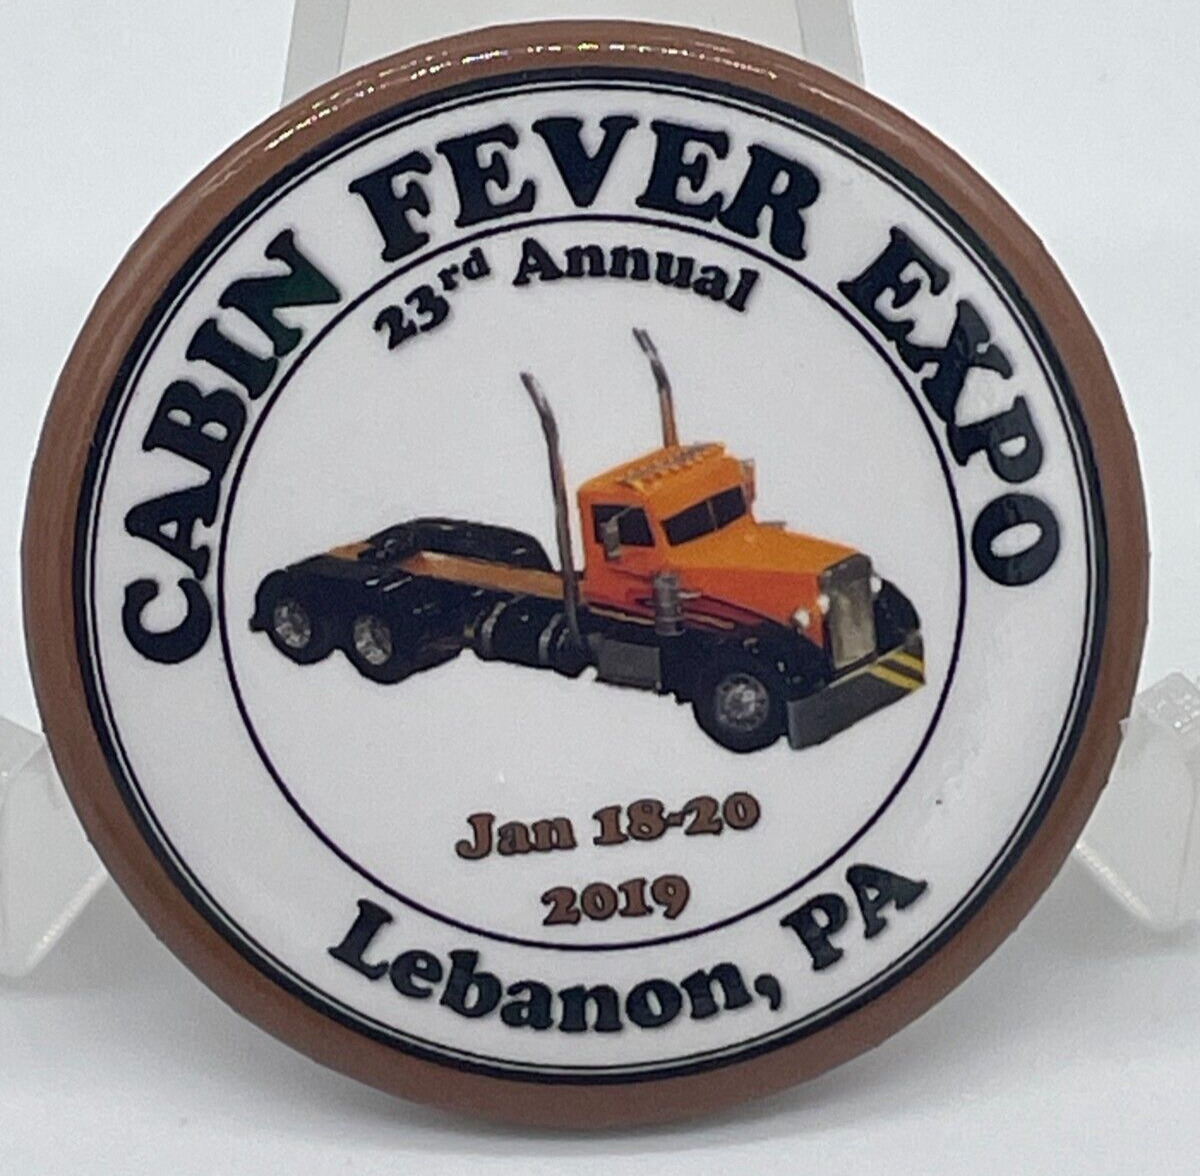 2019 Cabin Fever Expo 23rd Annual Lebanon Pennsylvania Tractor Button Pin Back